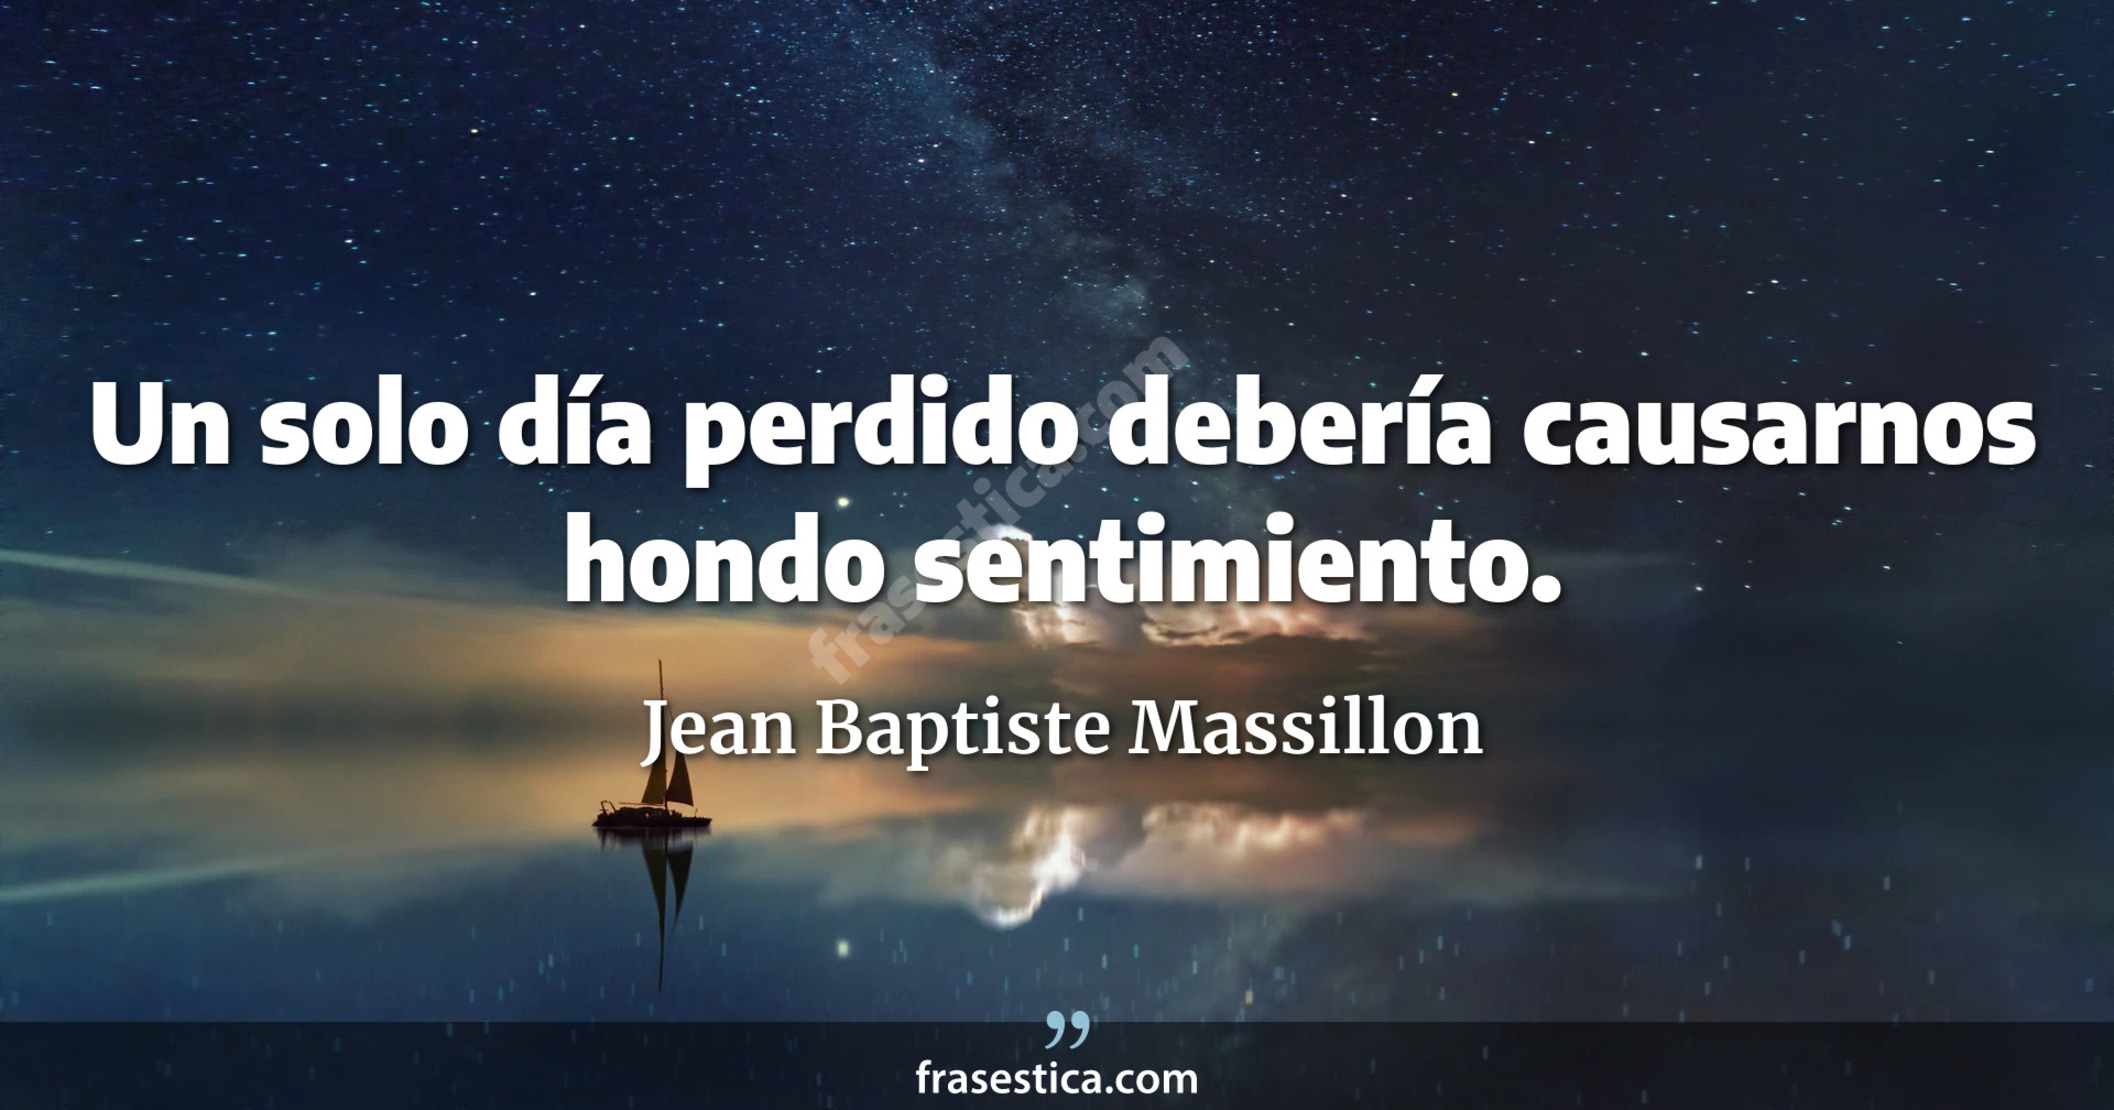 Un solo día perdido debería causarnos hondo sentimiento. - Jean Baptiste Massillon